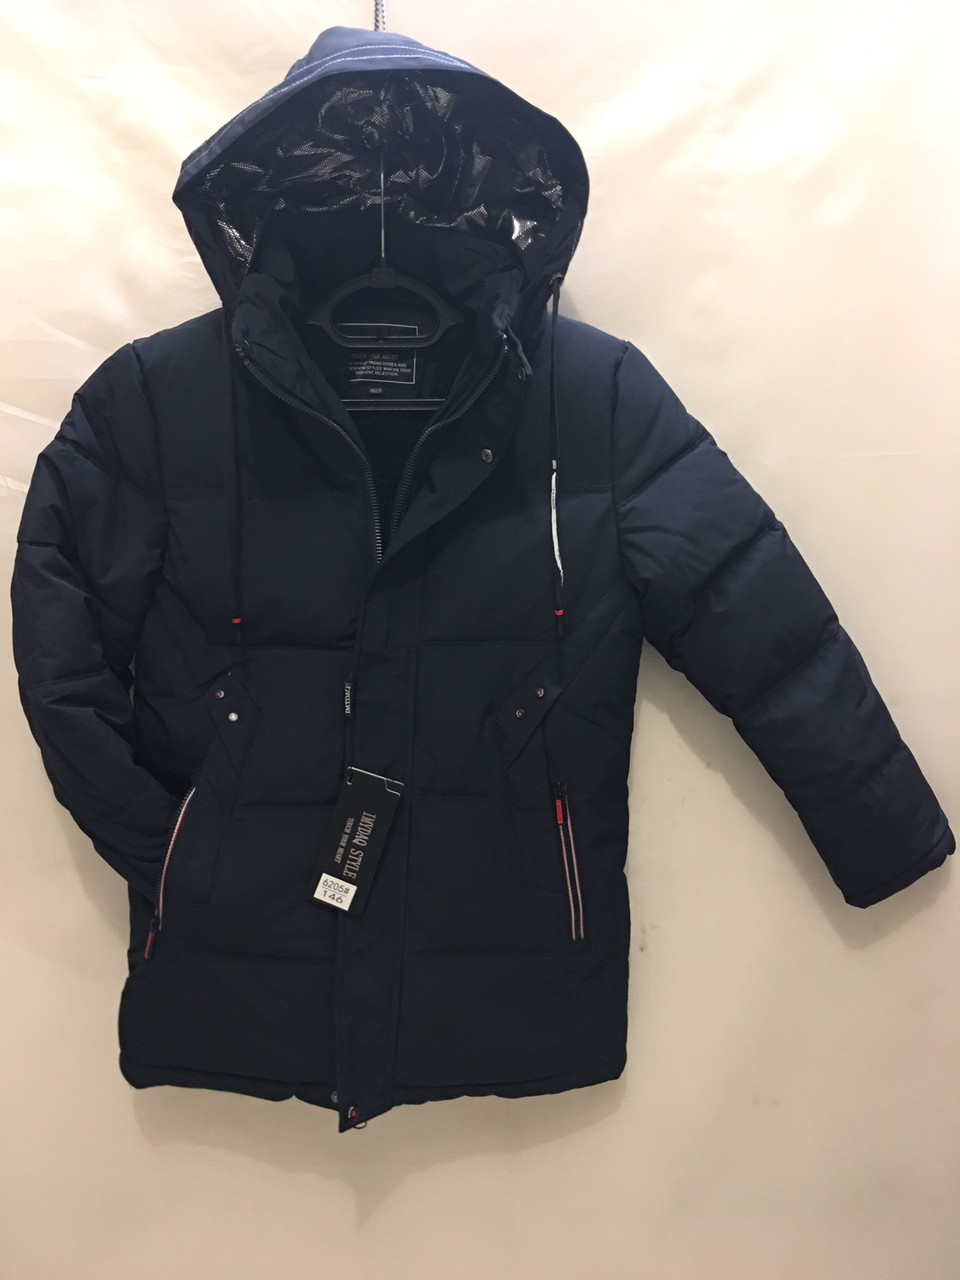 

Подростковая куртка для мальчика р. 140-164 опт